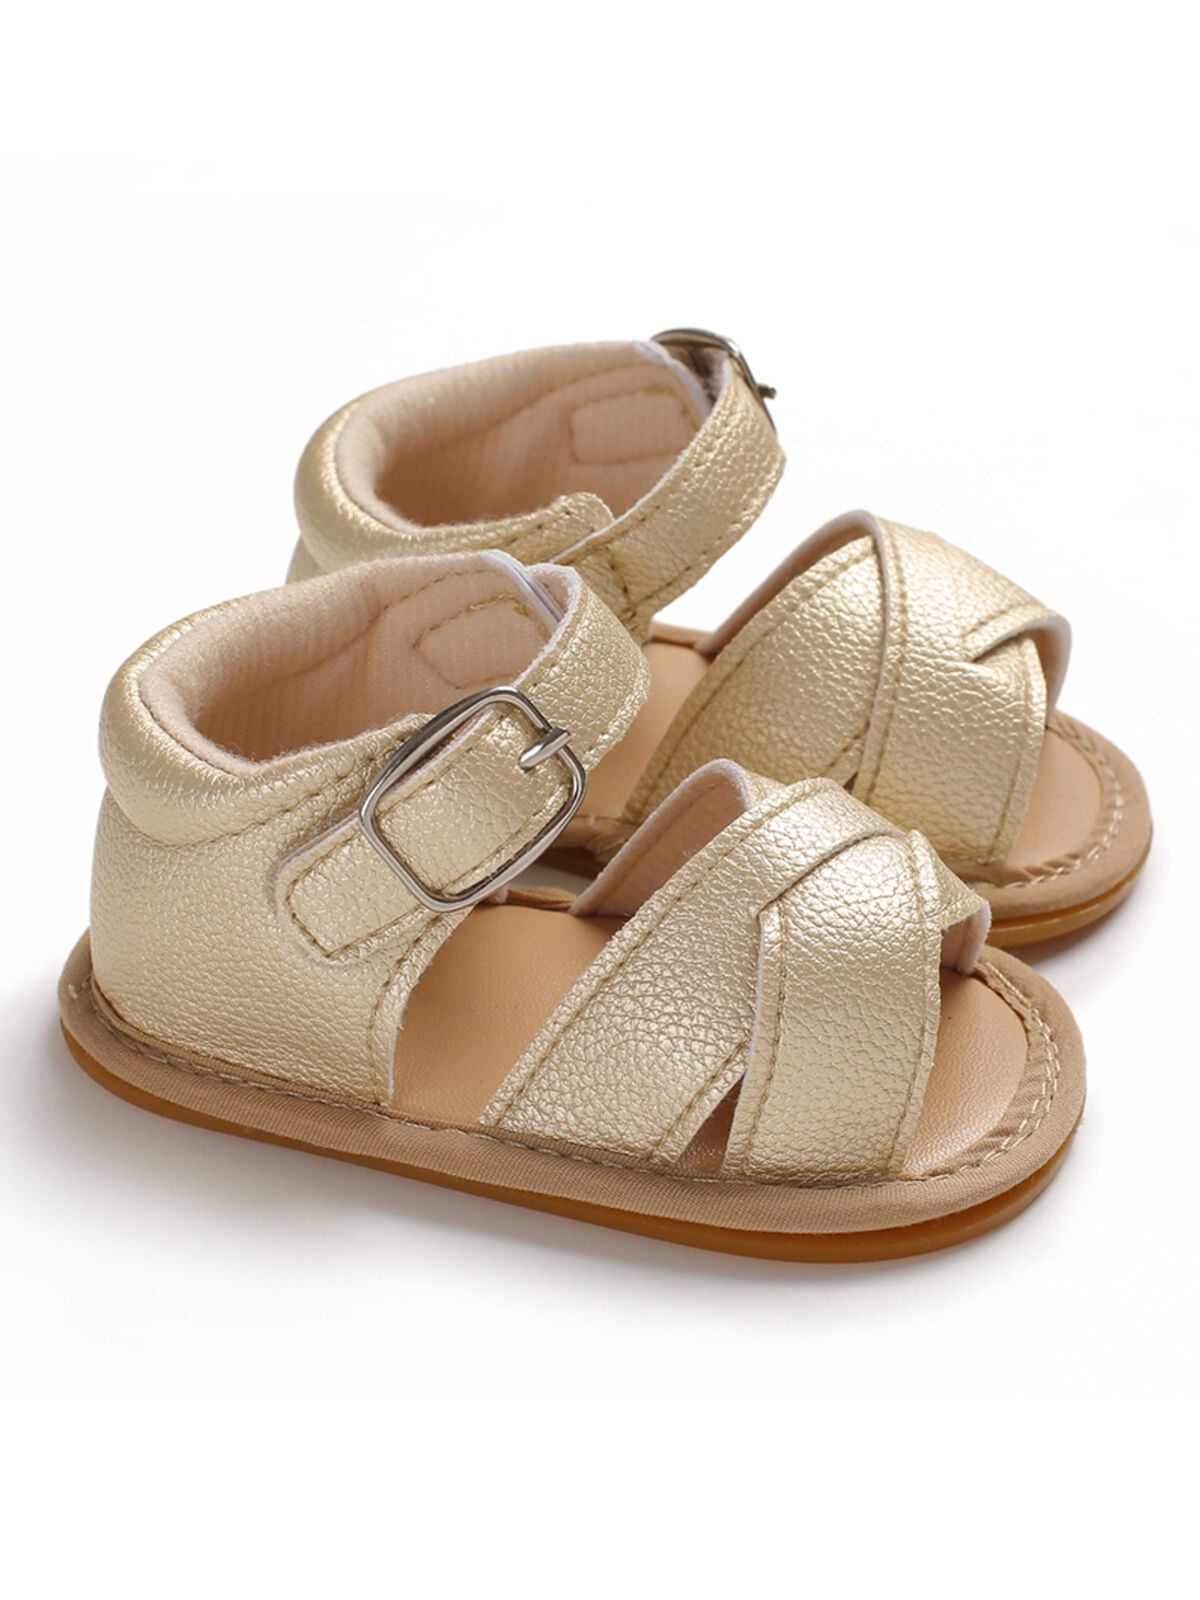 Editie Aardewerk Eenvoud 0-18 Months Baby Girls Sandals Toddler Princess Shoes for Summer Cute Kids  Sandals - Walmart.com